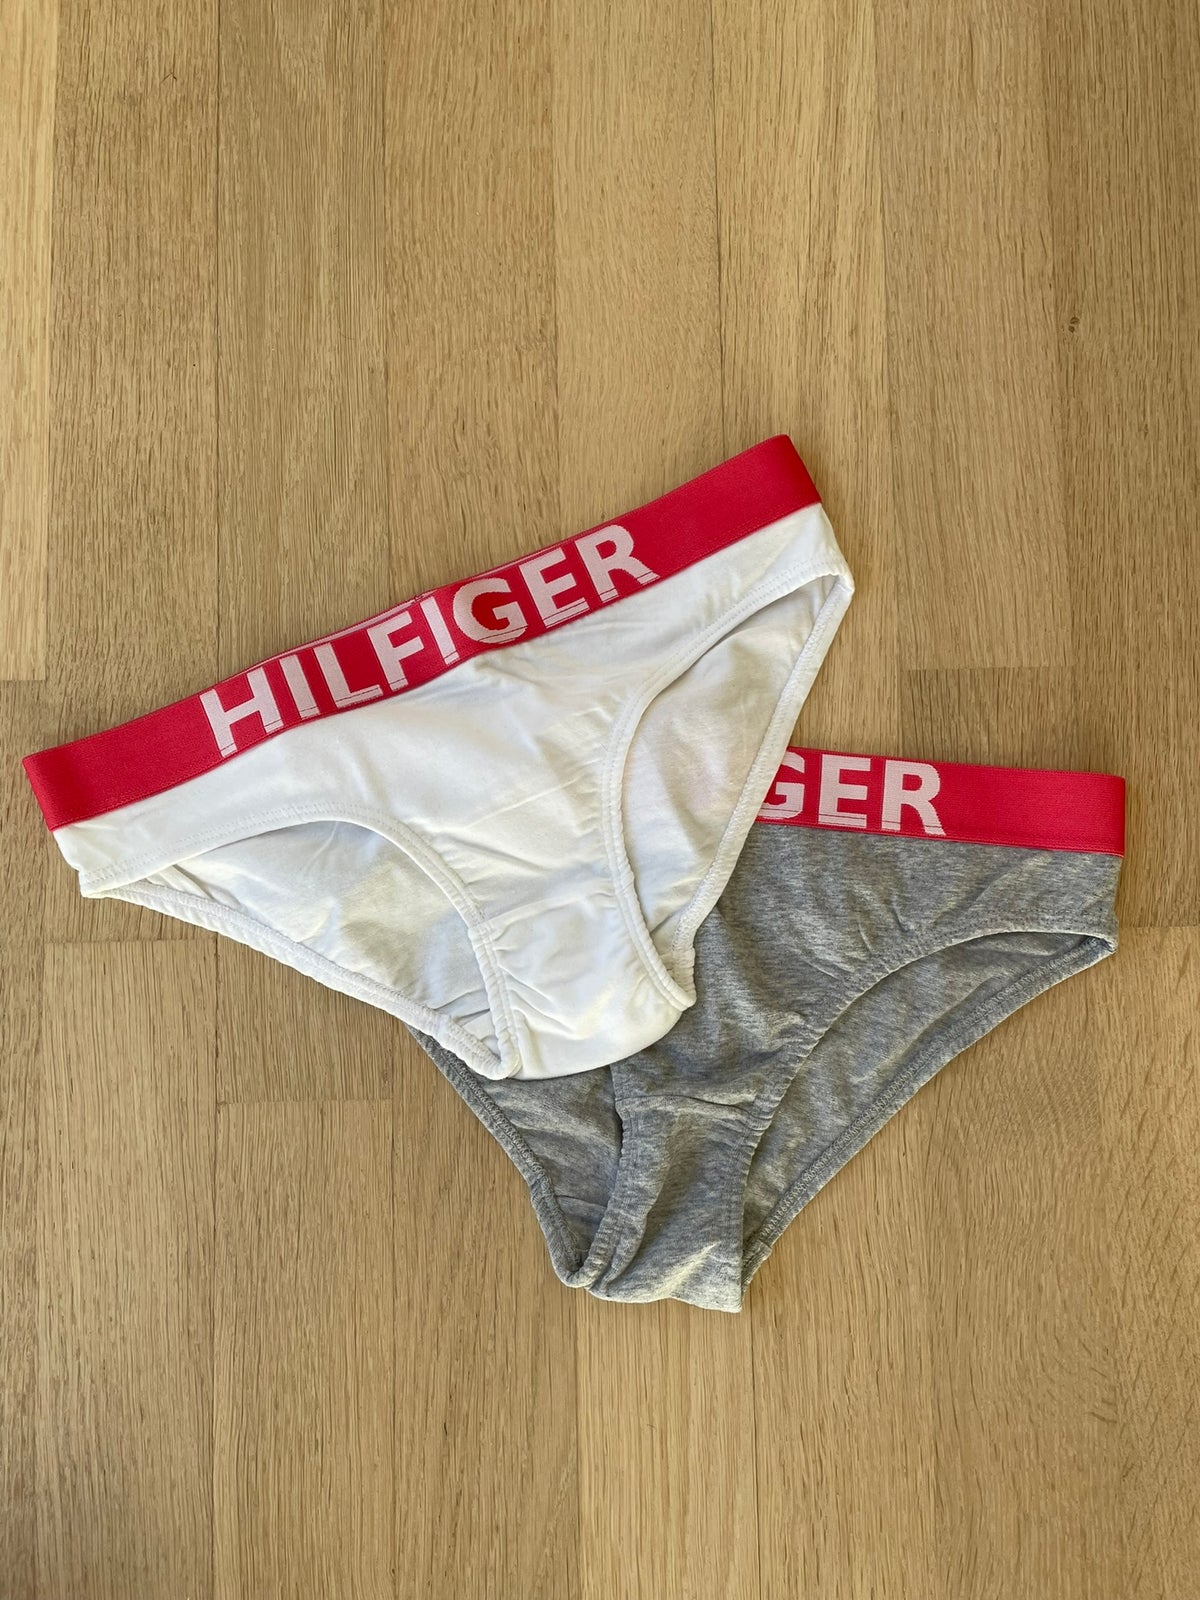 Undertøj, Trusser, Tommy Hilfiger dba.dk - Køb Salg af Nyt og Brugt